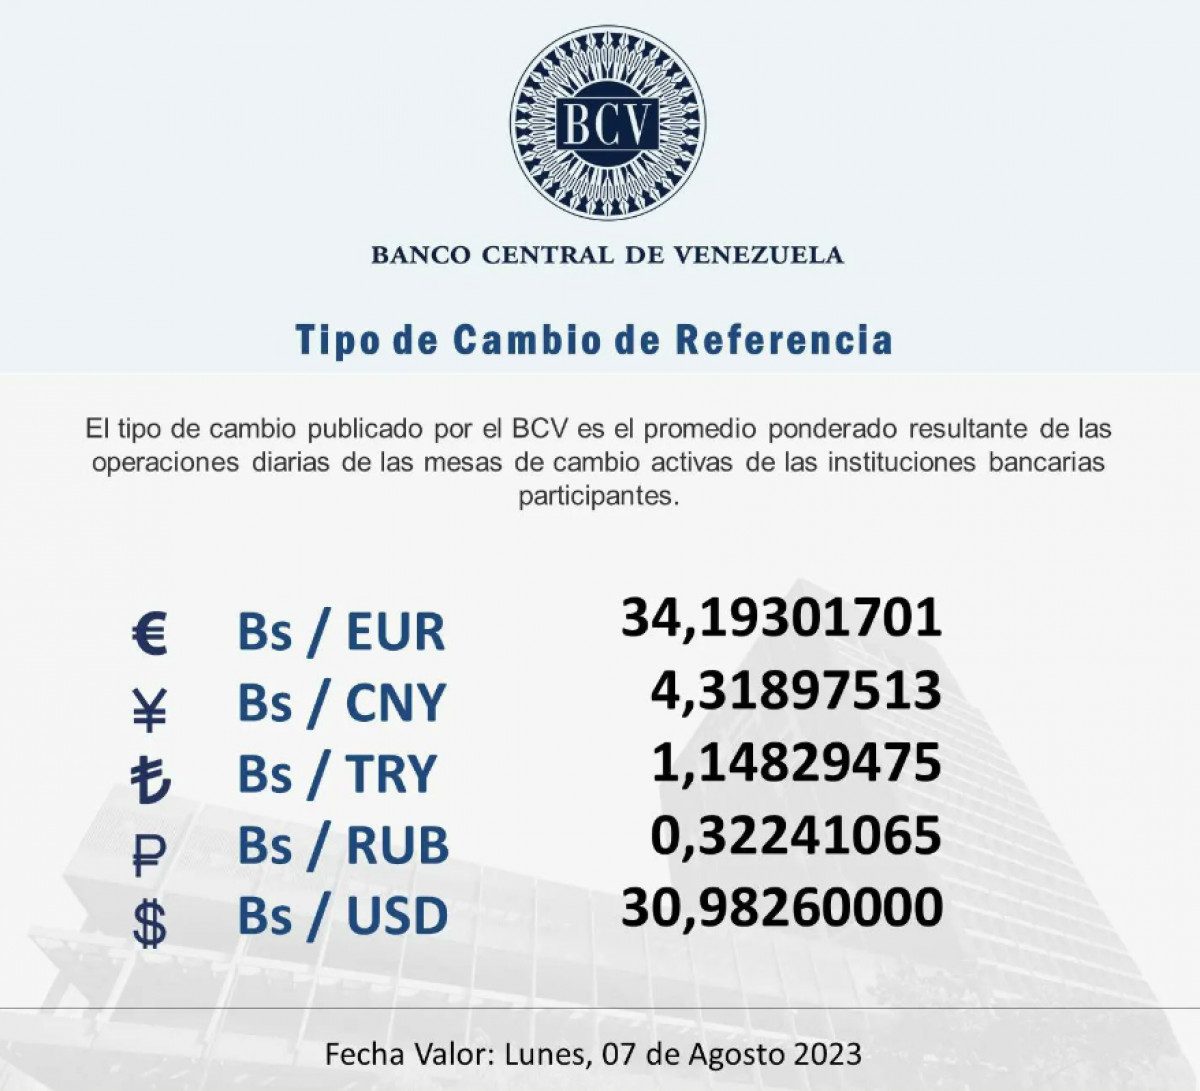 dolartoday en venezuela precio del dolar este sabado 5 de agosto de 2023 laverdaddemonagas.com bcv656